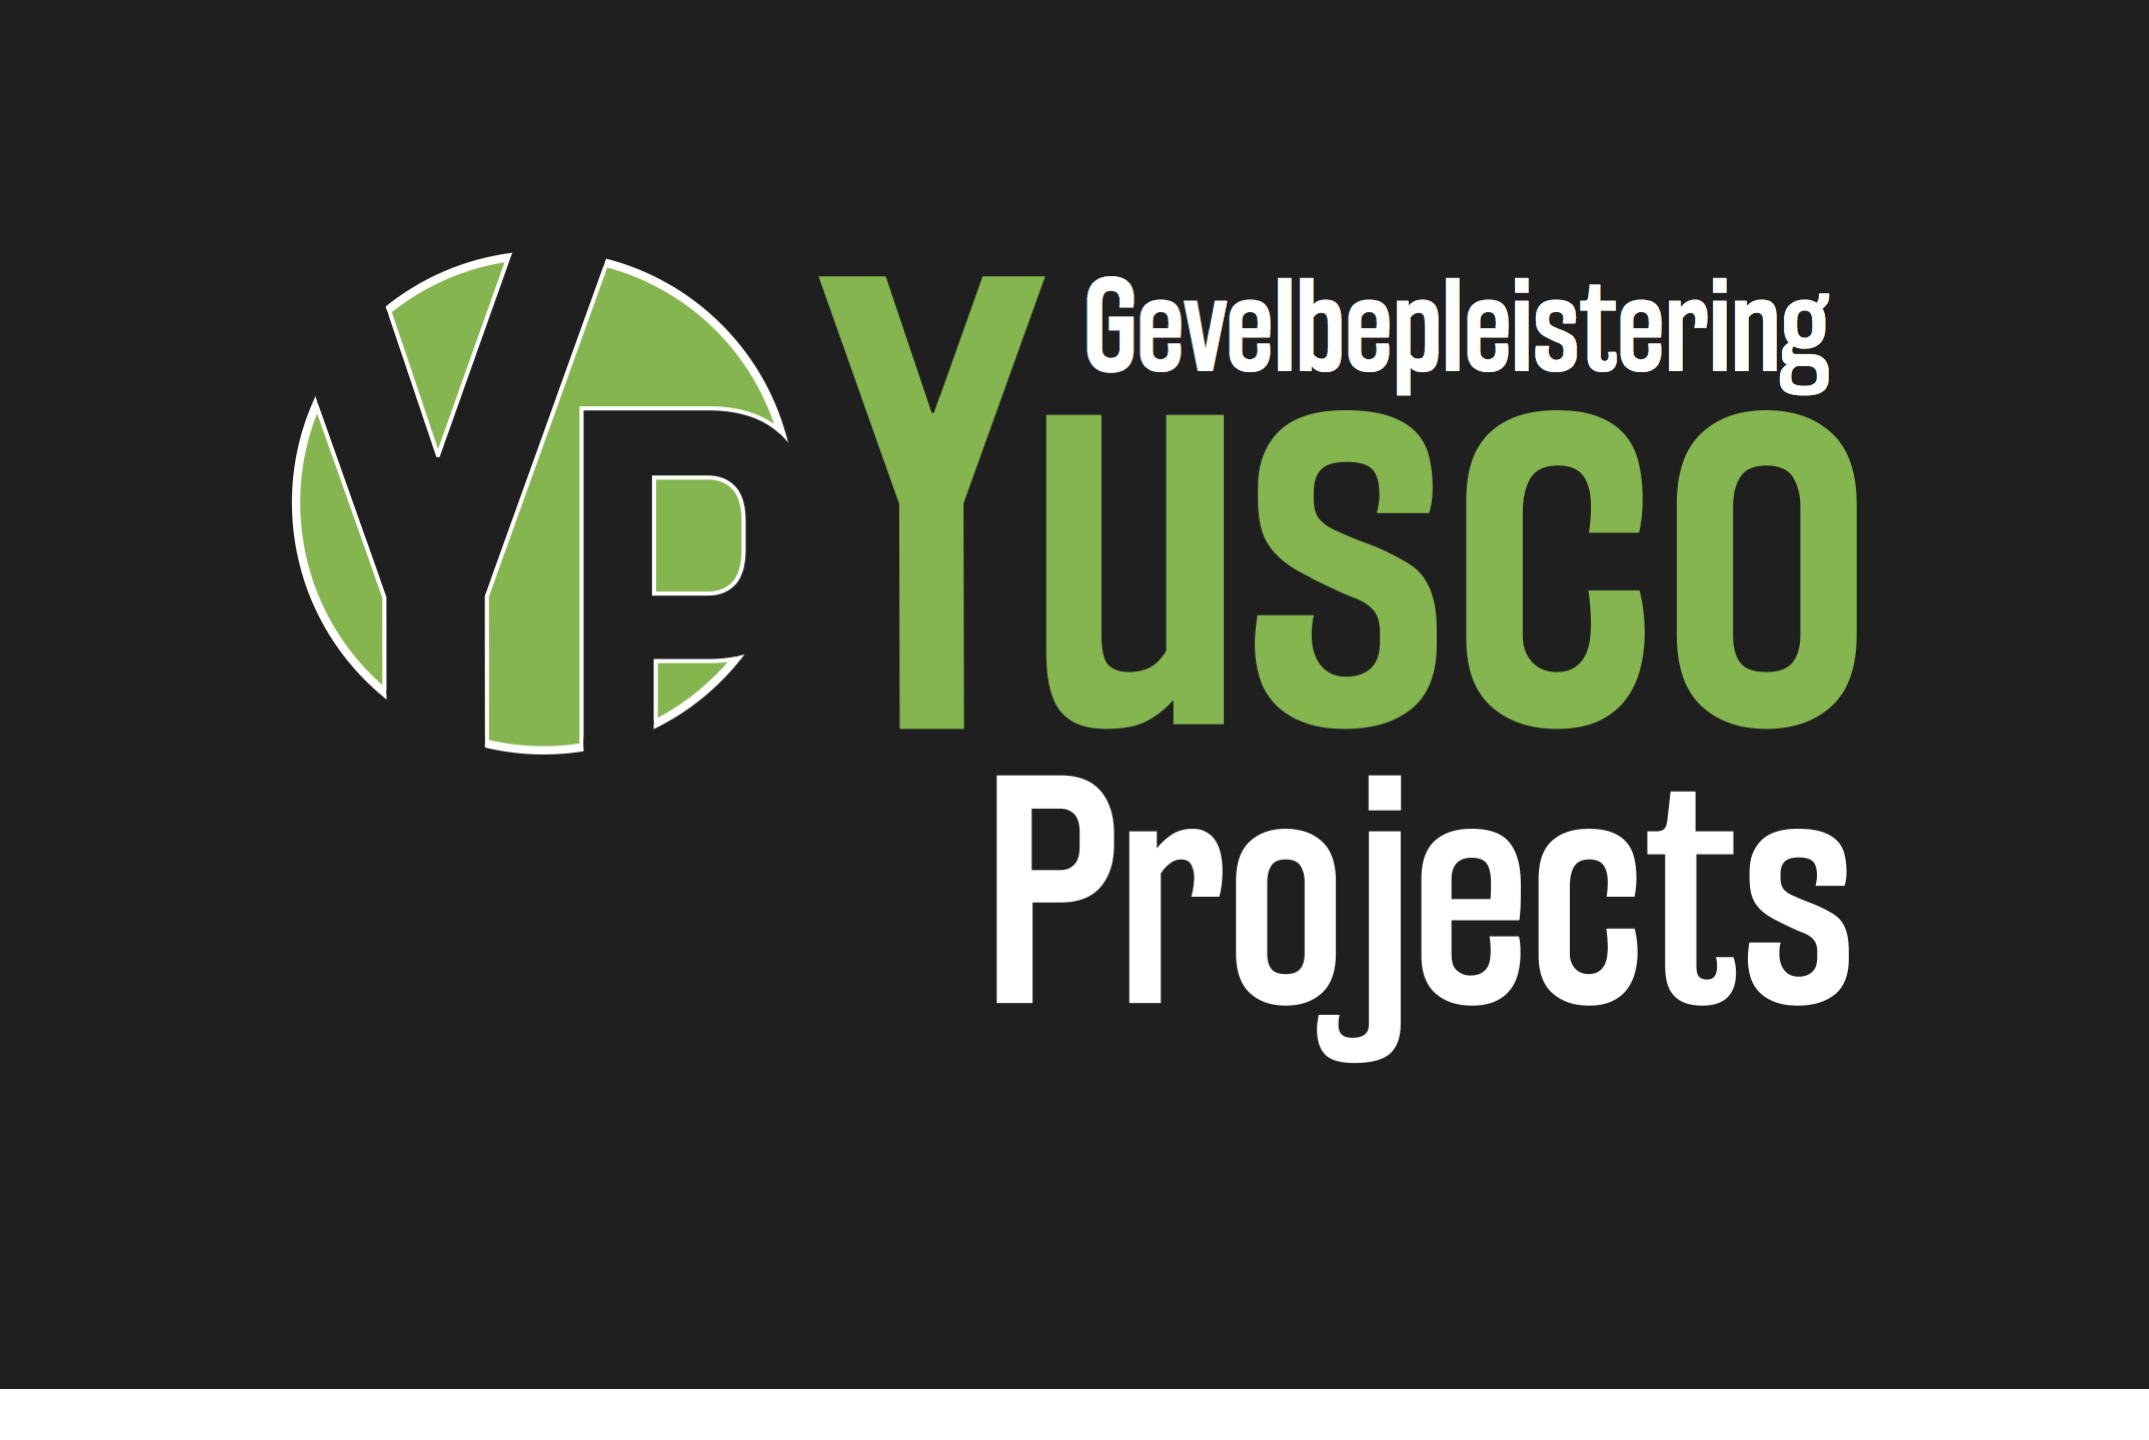 renovatieaannemers Gent Yusco Projects Gevelbepleistering